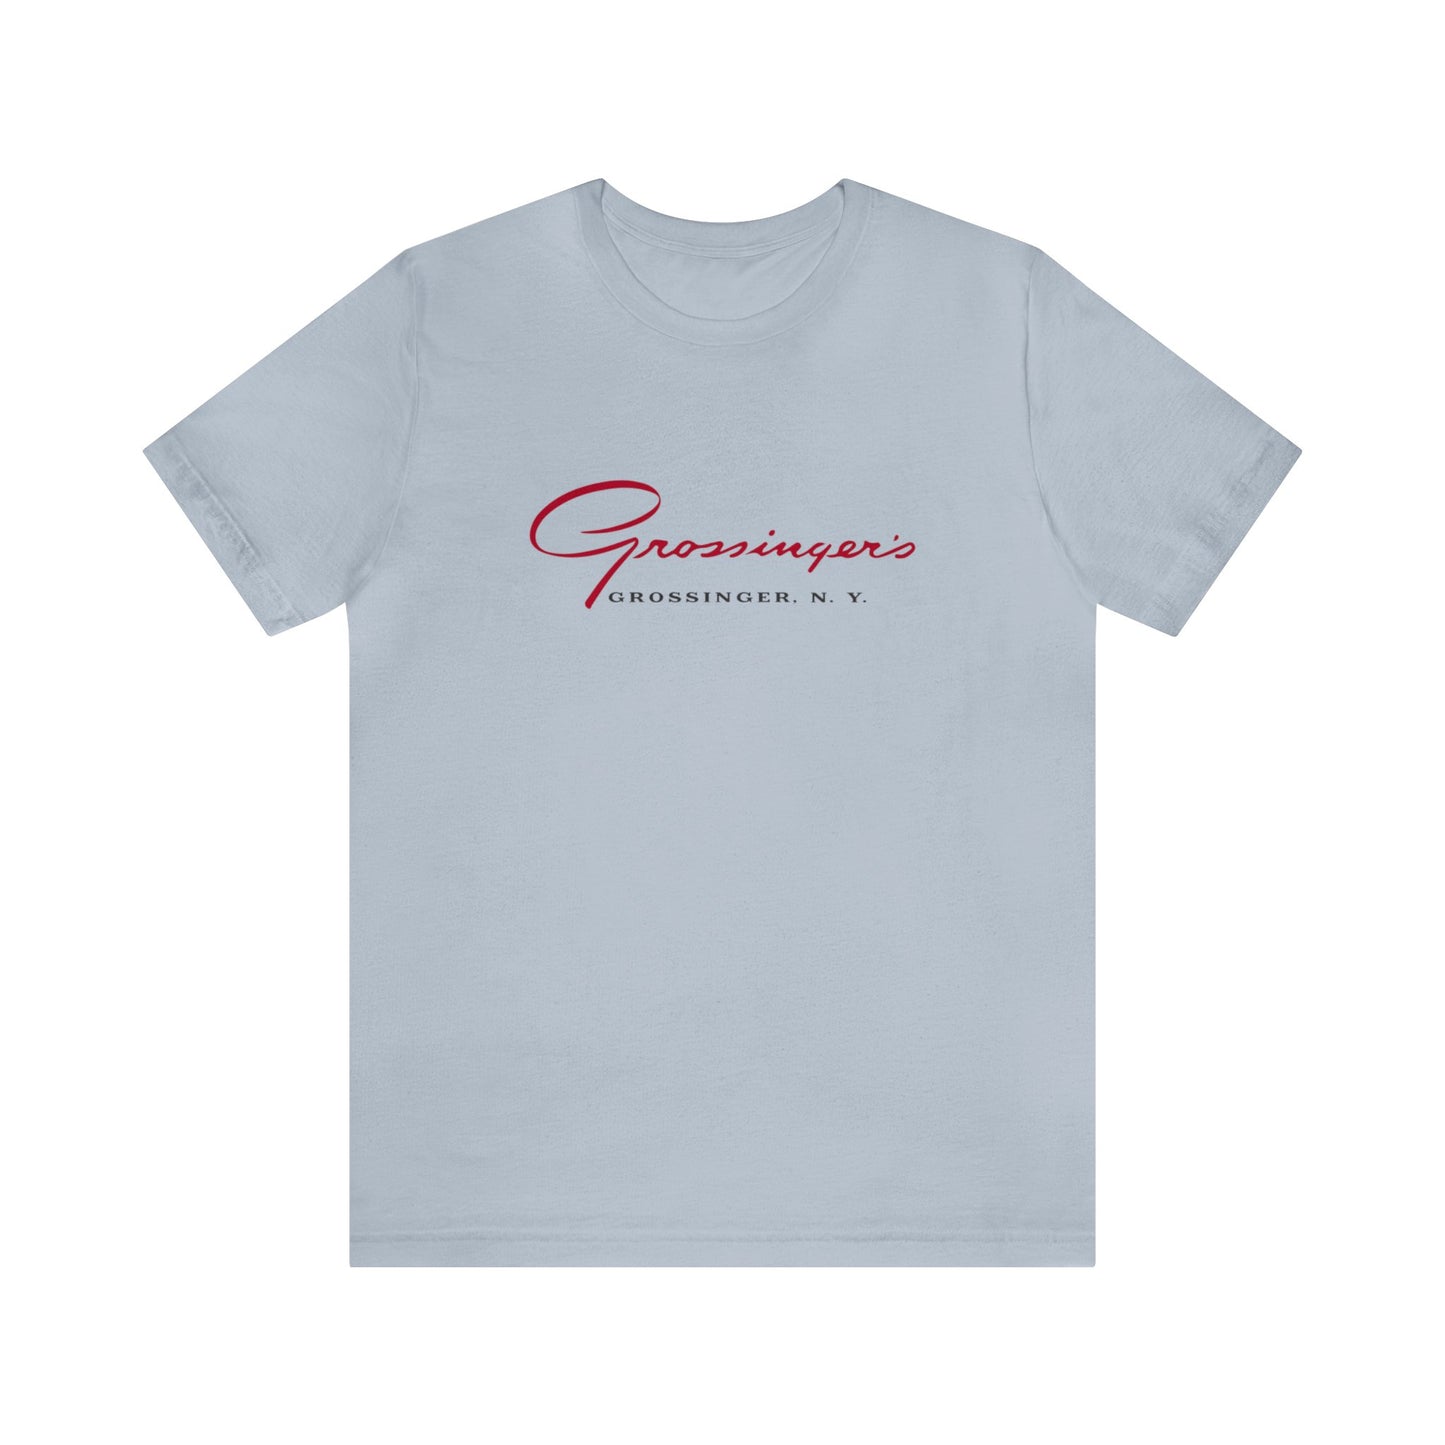 Grossinger's - Unisex T-Shirt